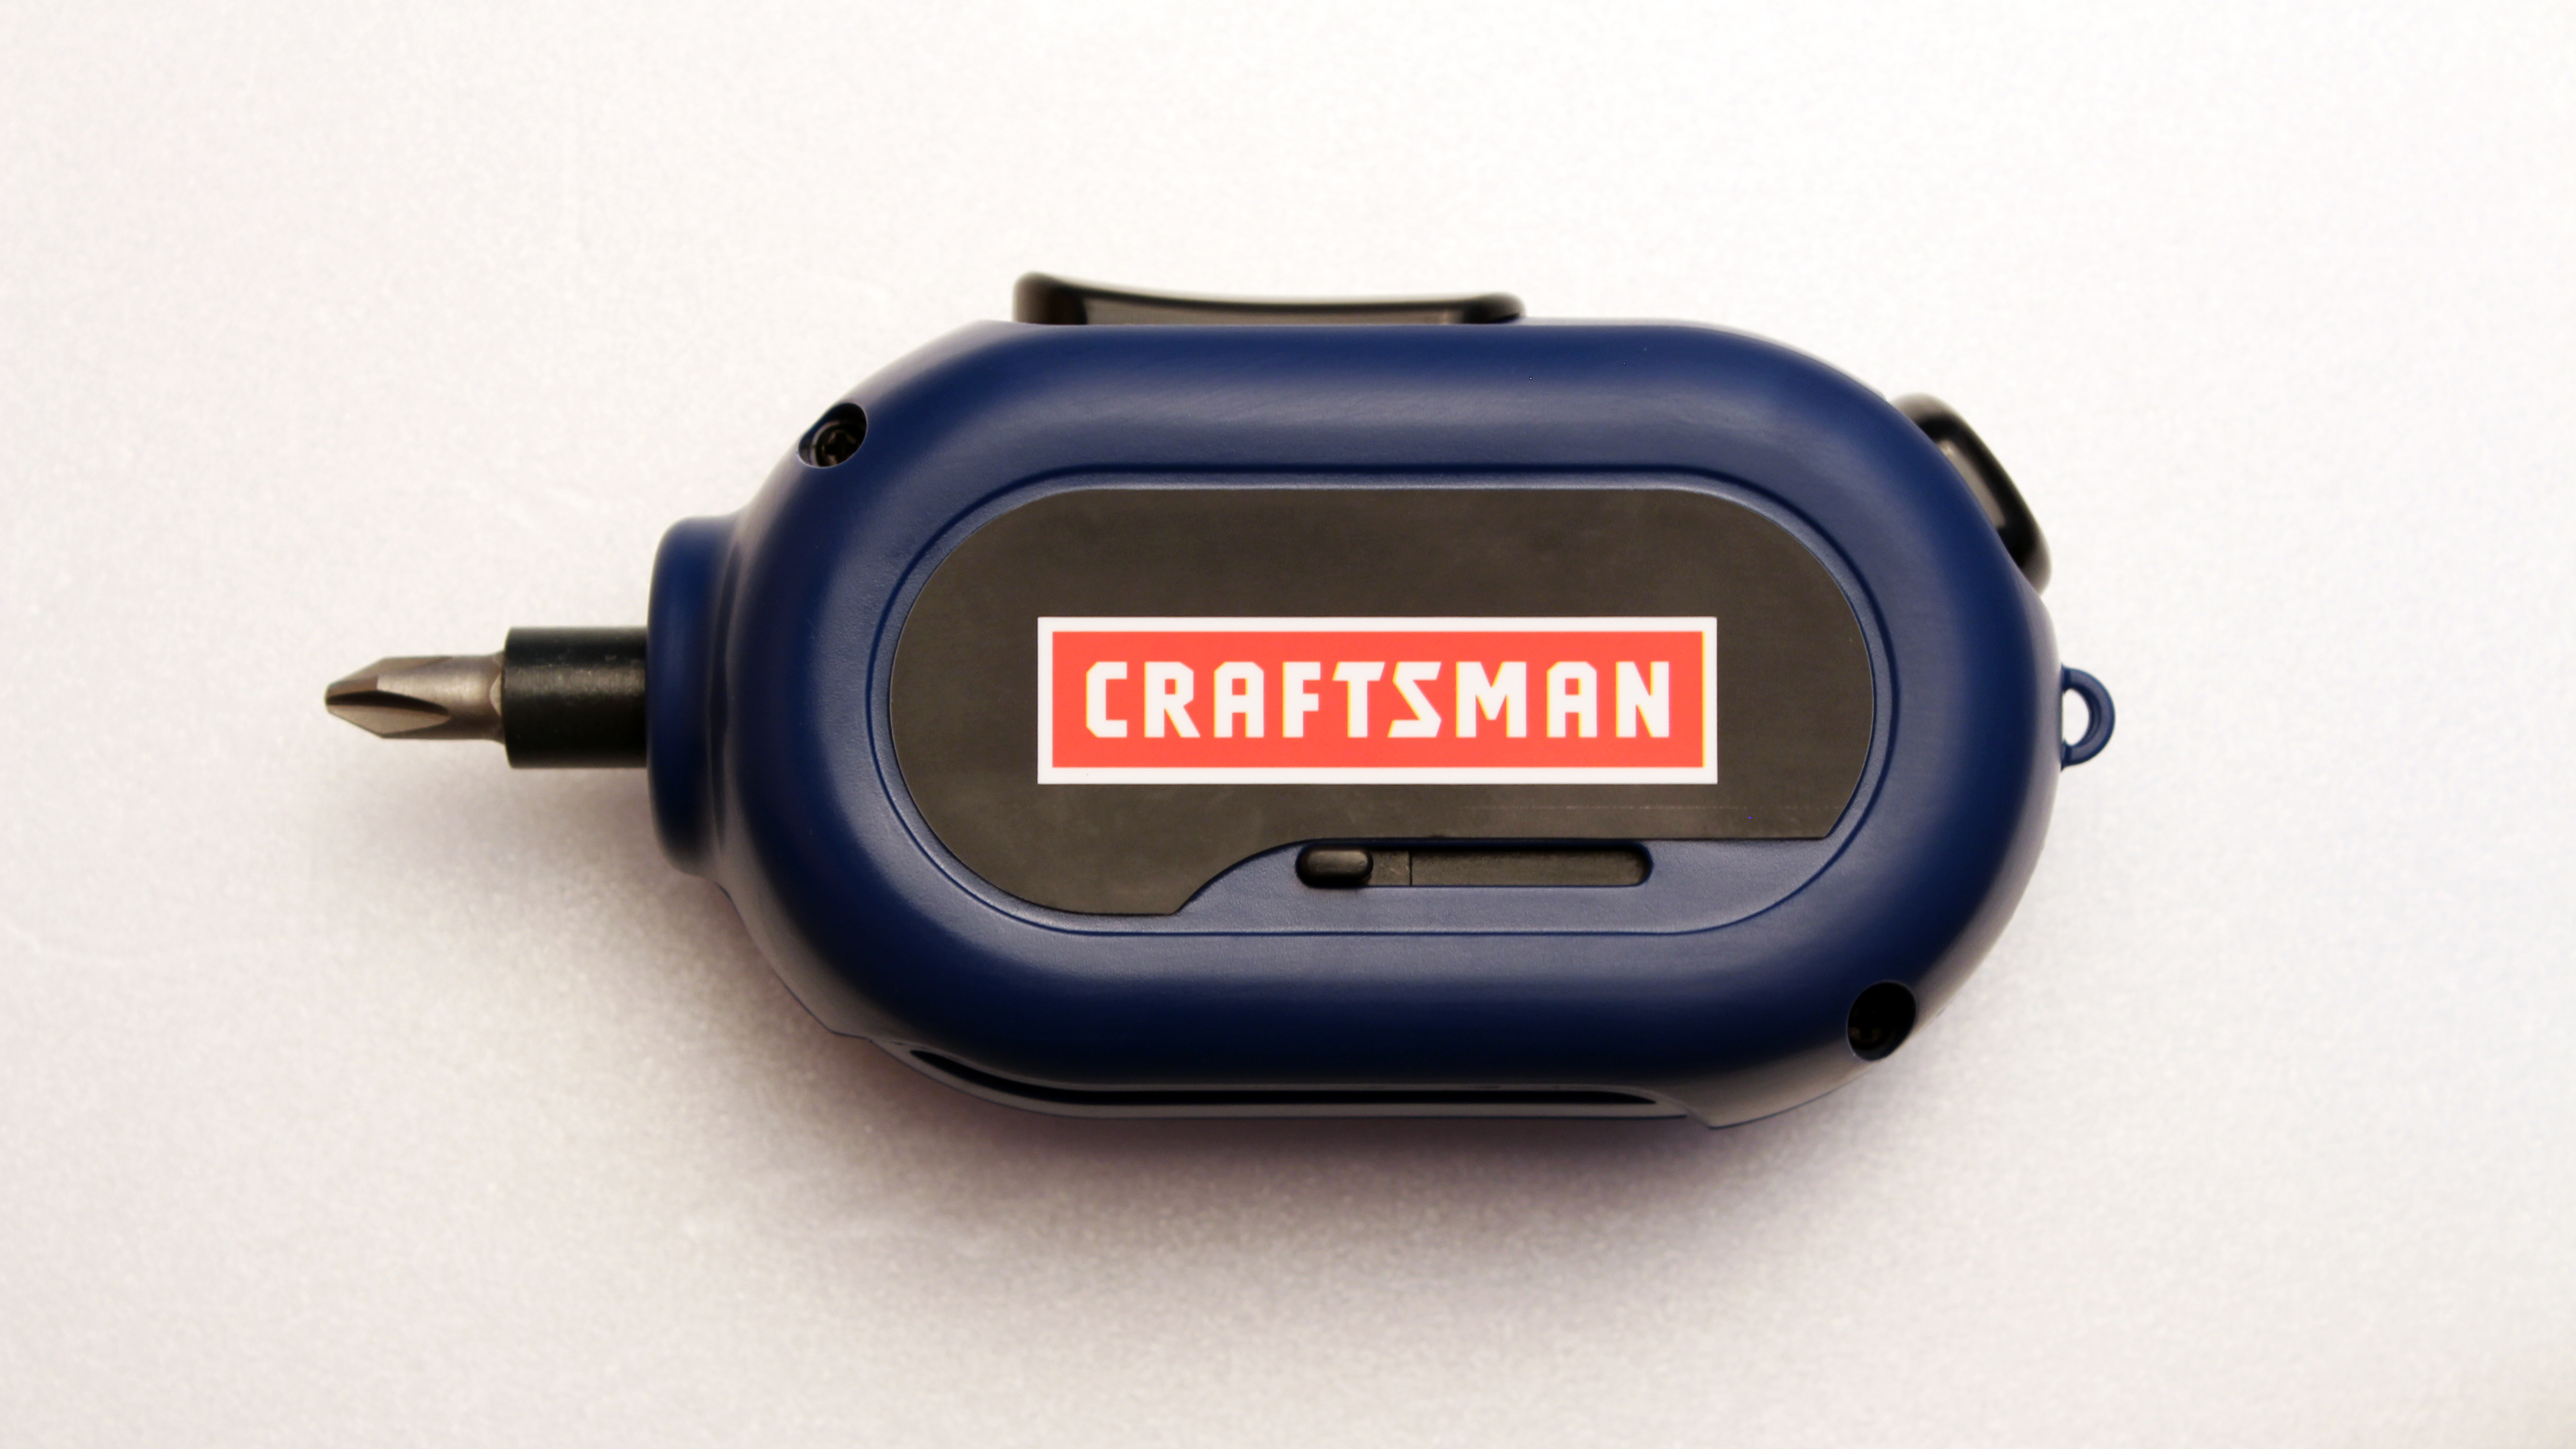 Craftsman Blue 3.7V Cordless Screwdriver